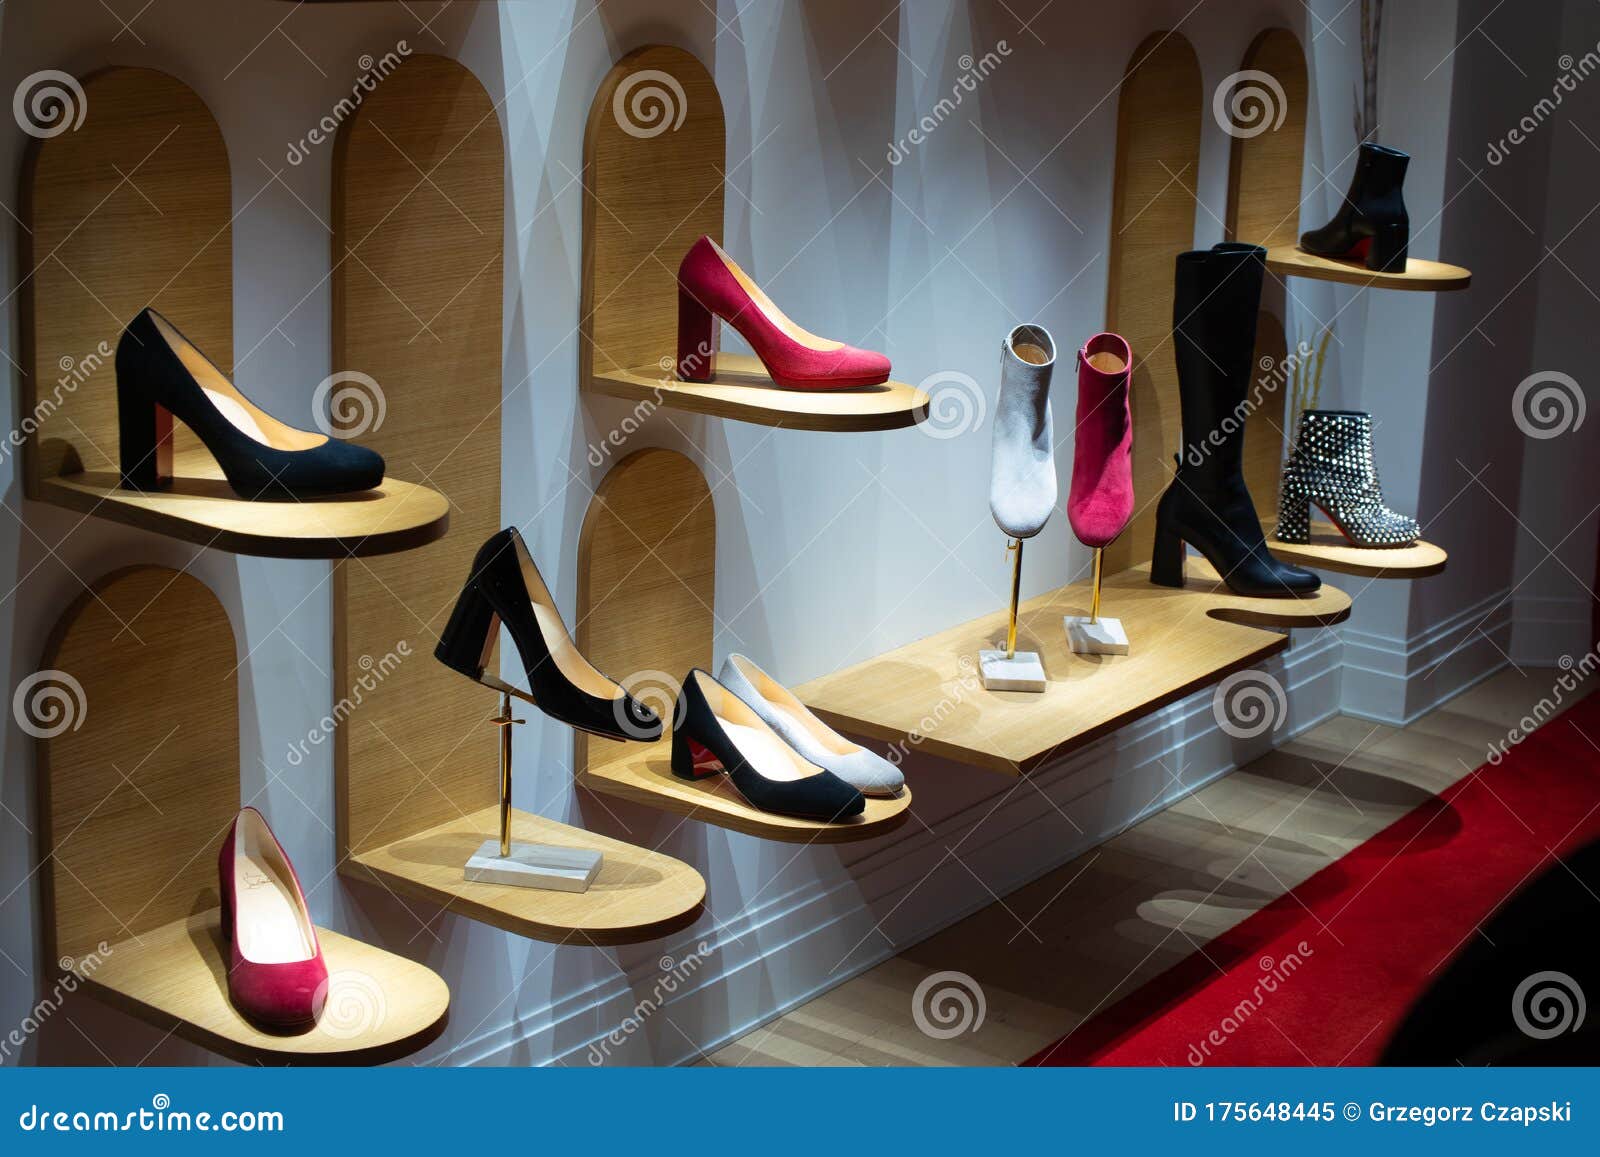 Christian Louboutin Window Store, Shoe 